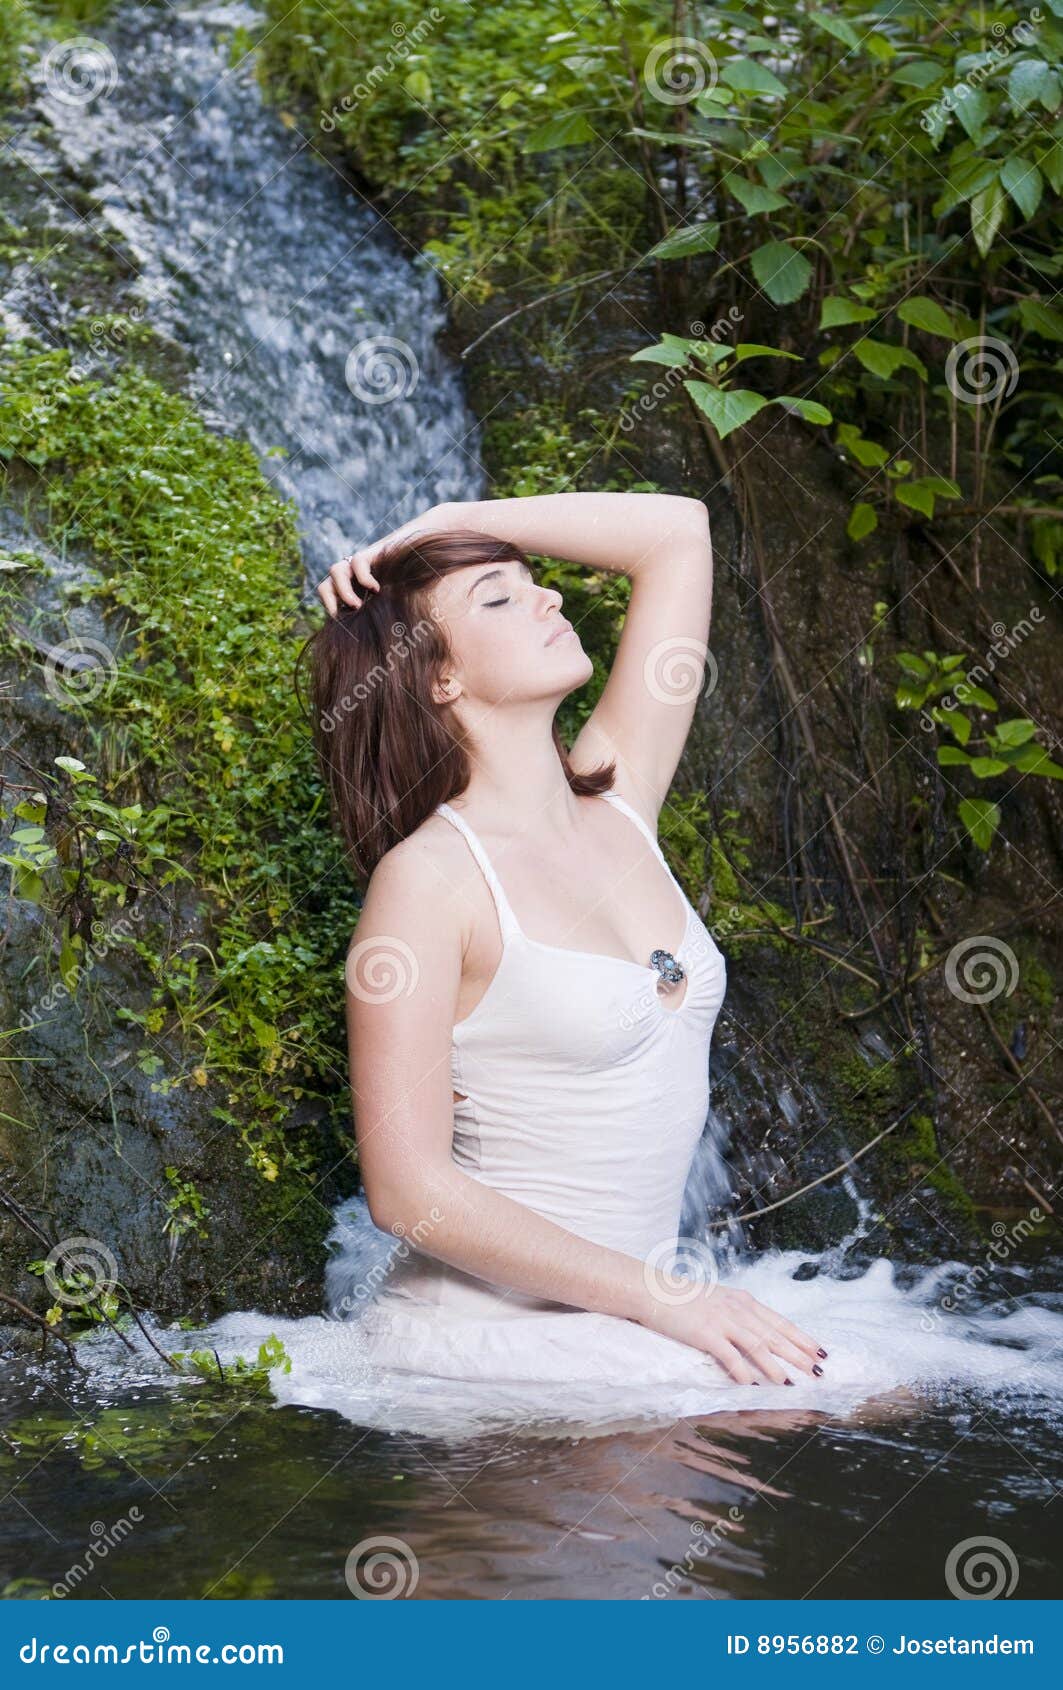 Best of Women bathing in waterfalls